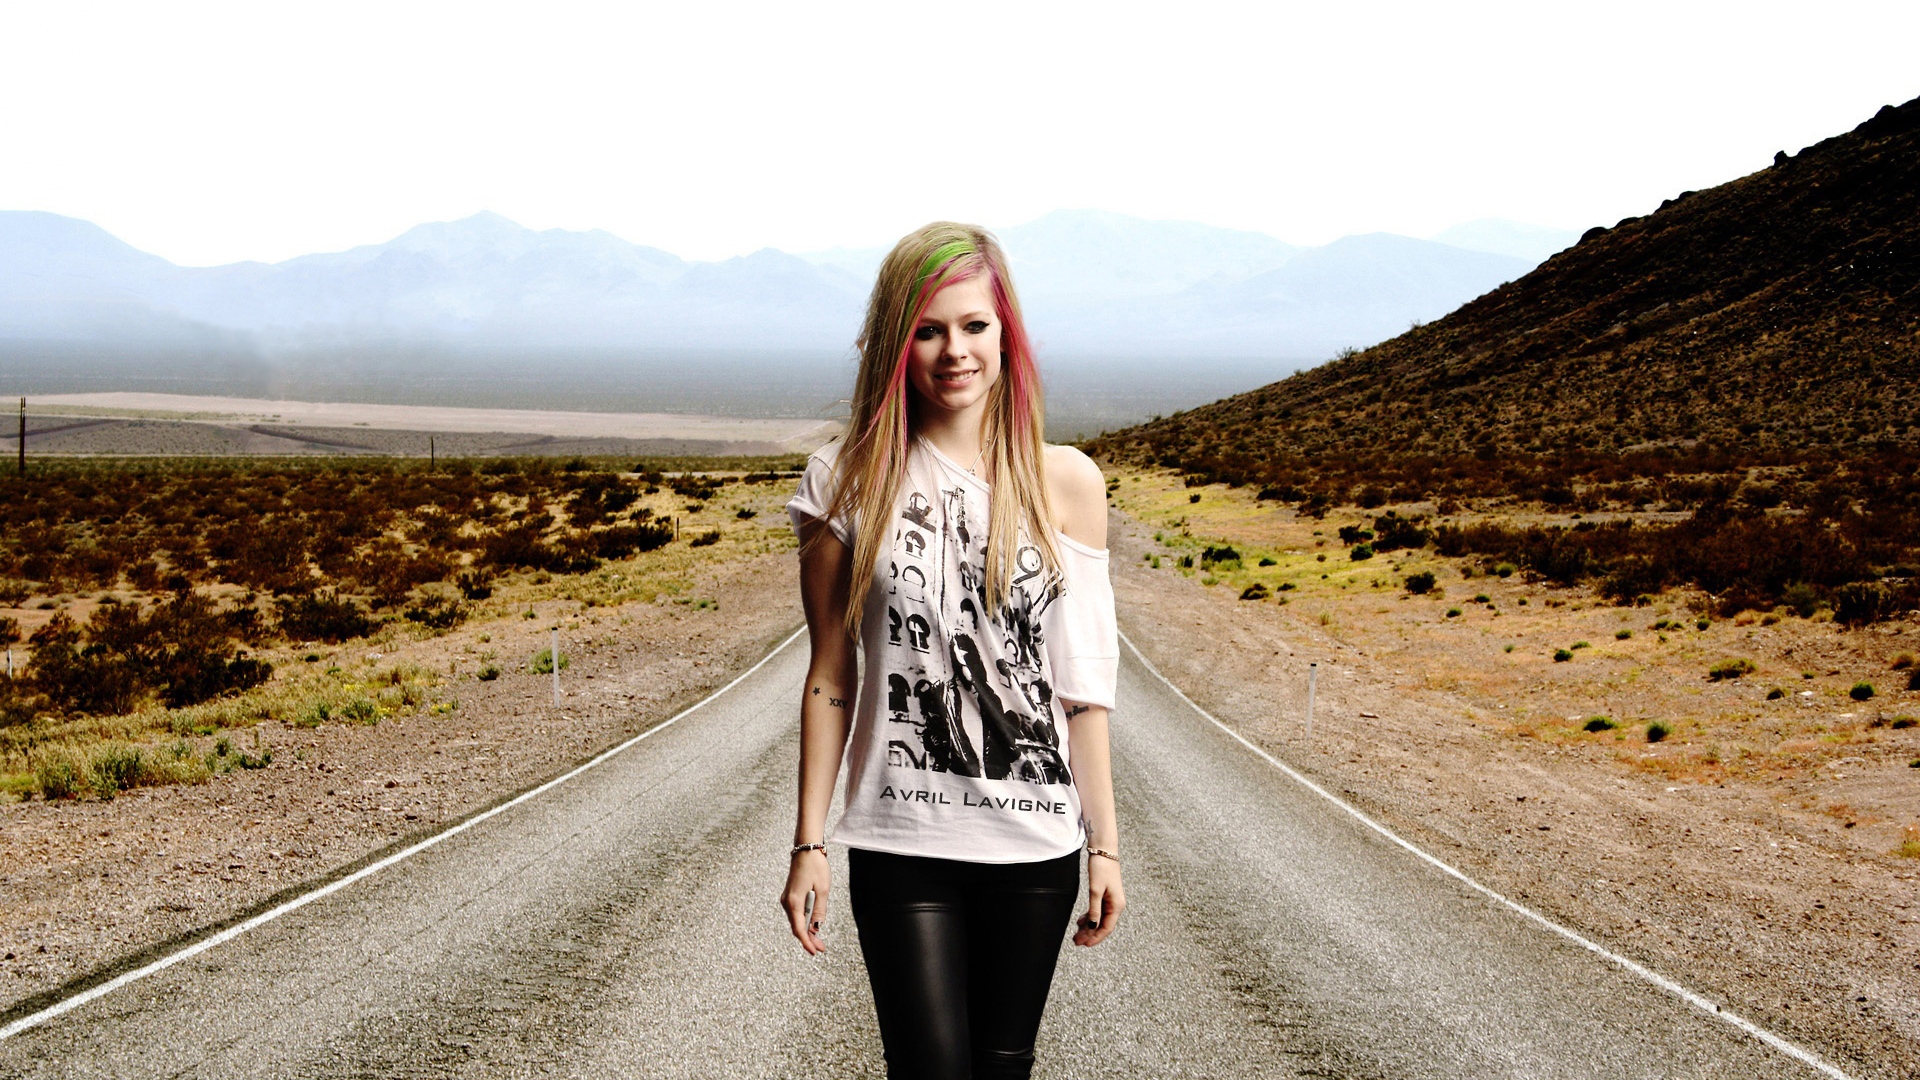 Avril Lavigne Walking for 1920 x 1080 HDTV 1080p resolution